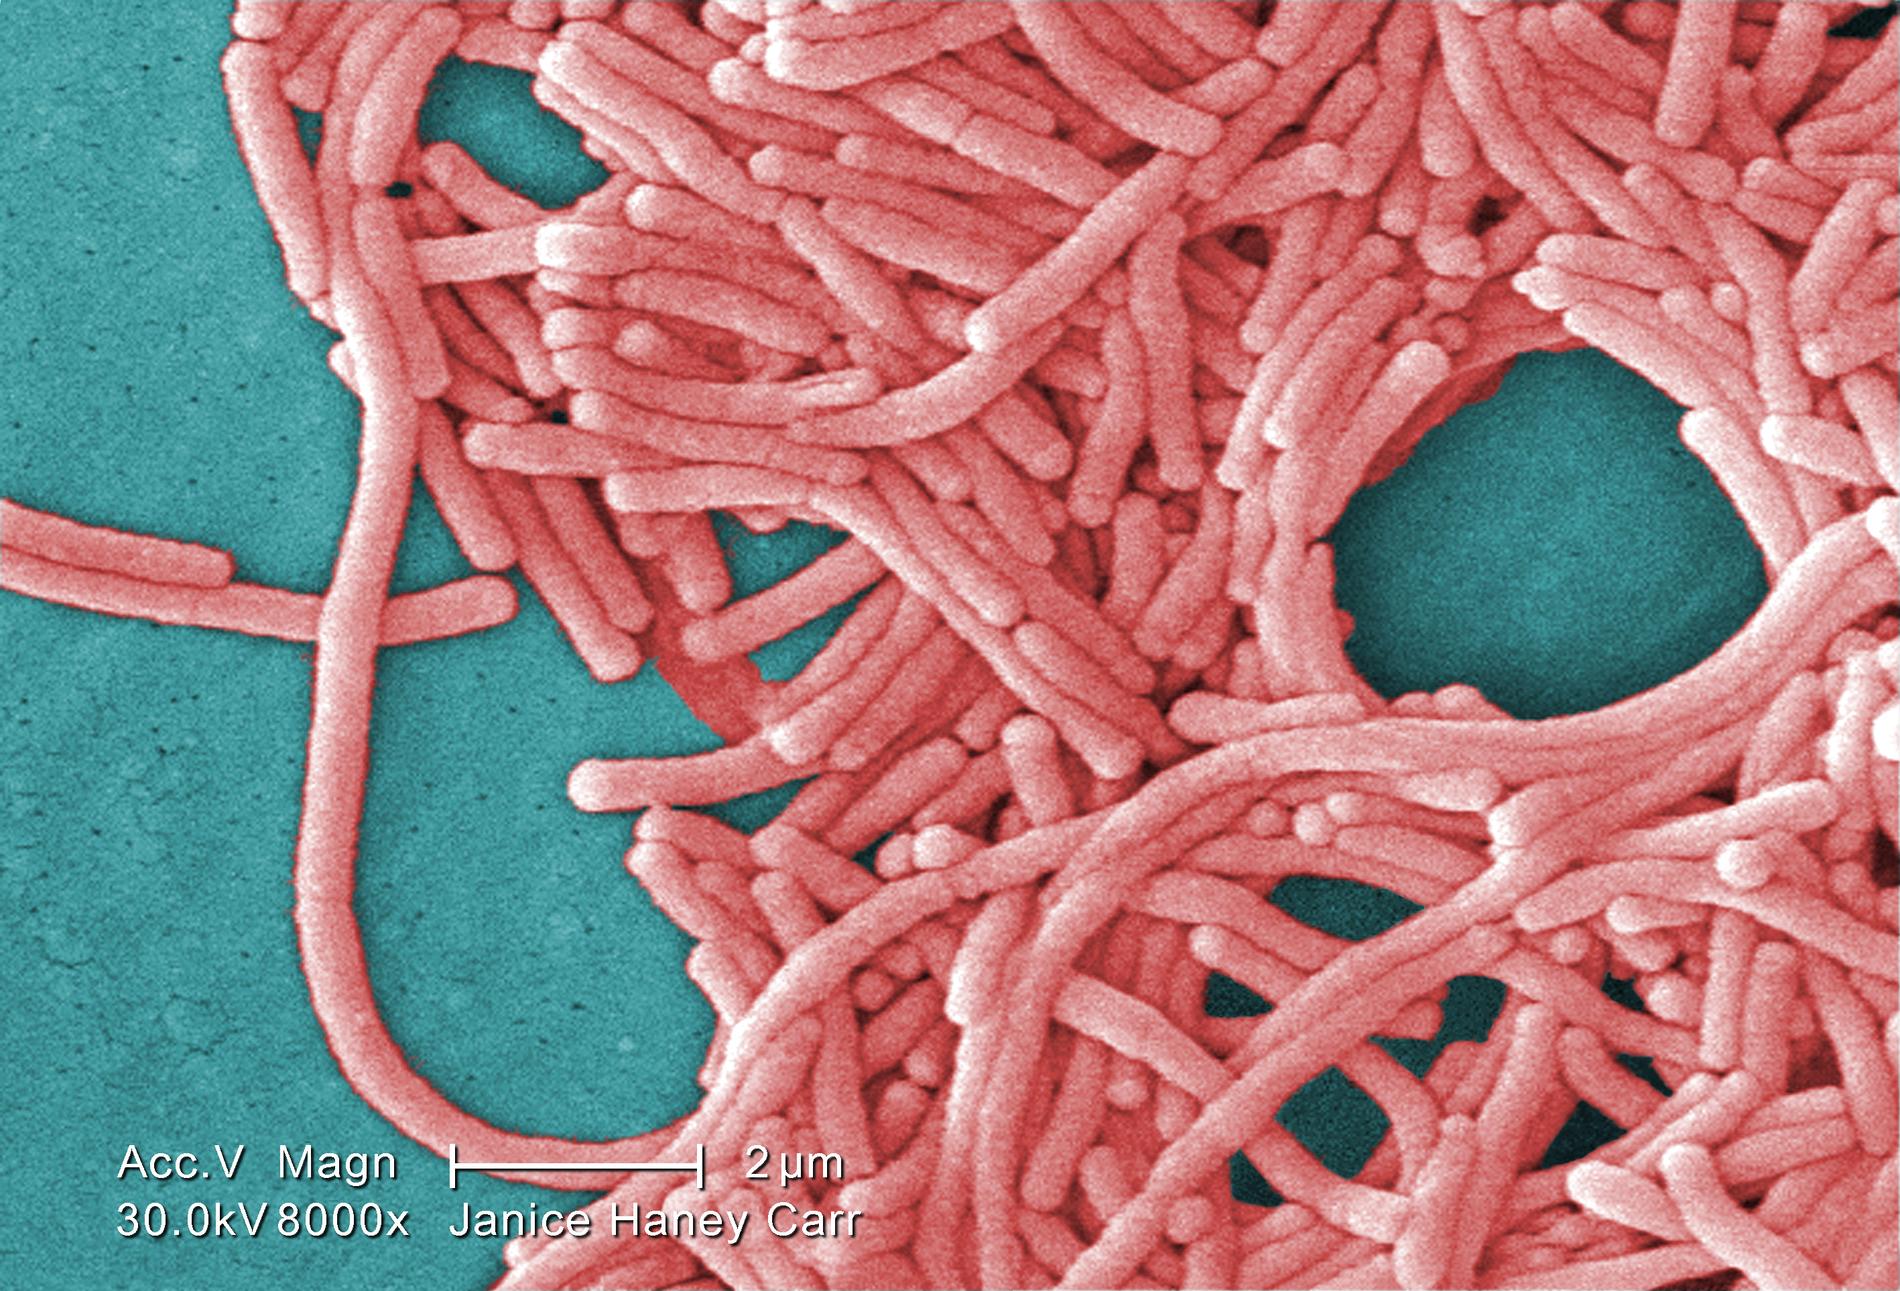 En grupp av gramnegativa Legionella pneumophila-bakterier.